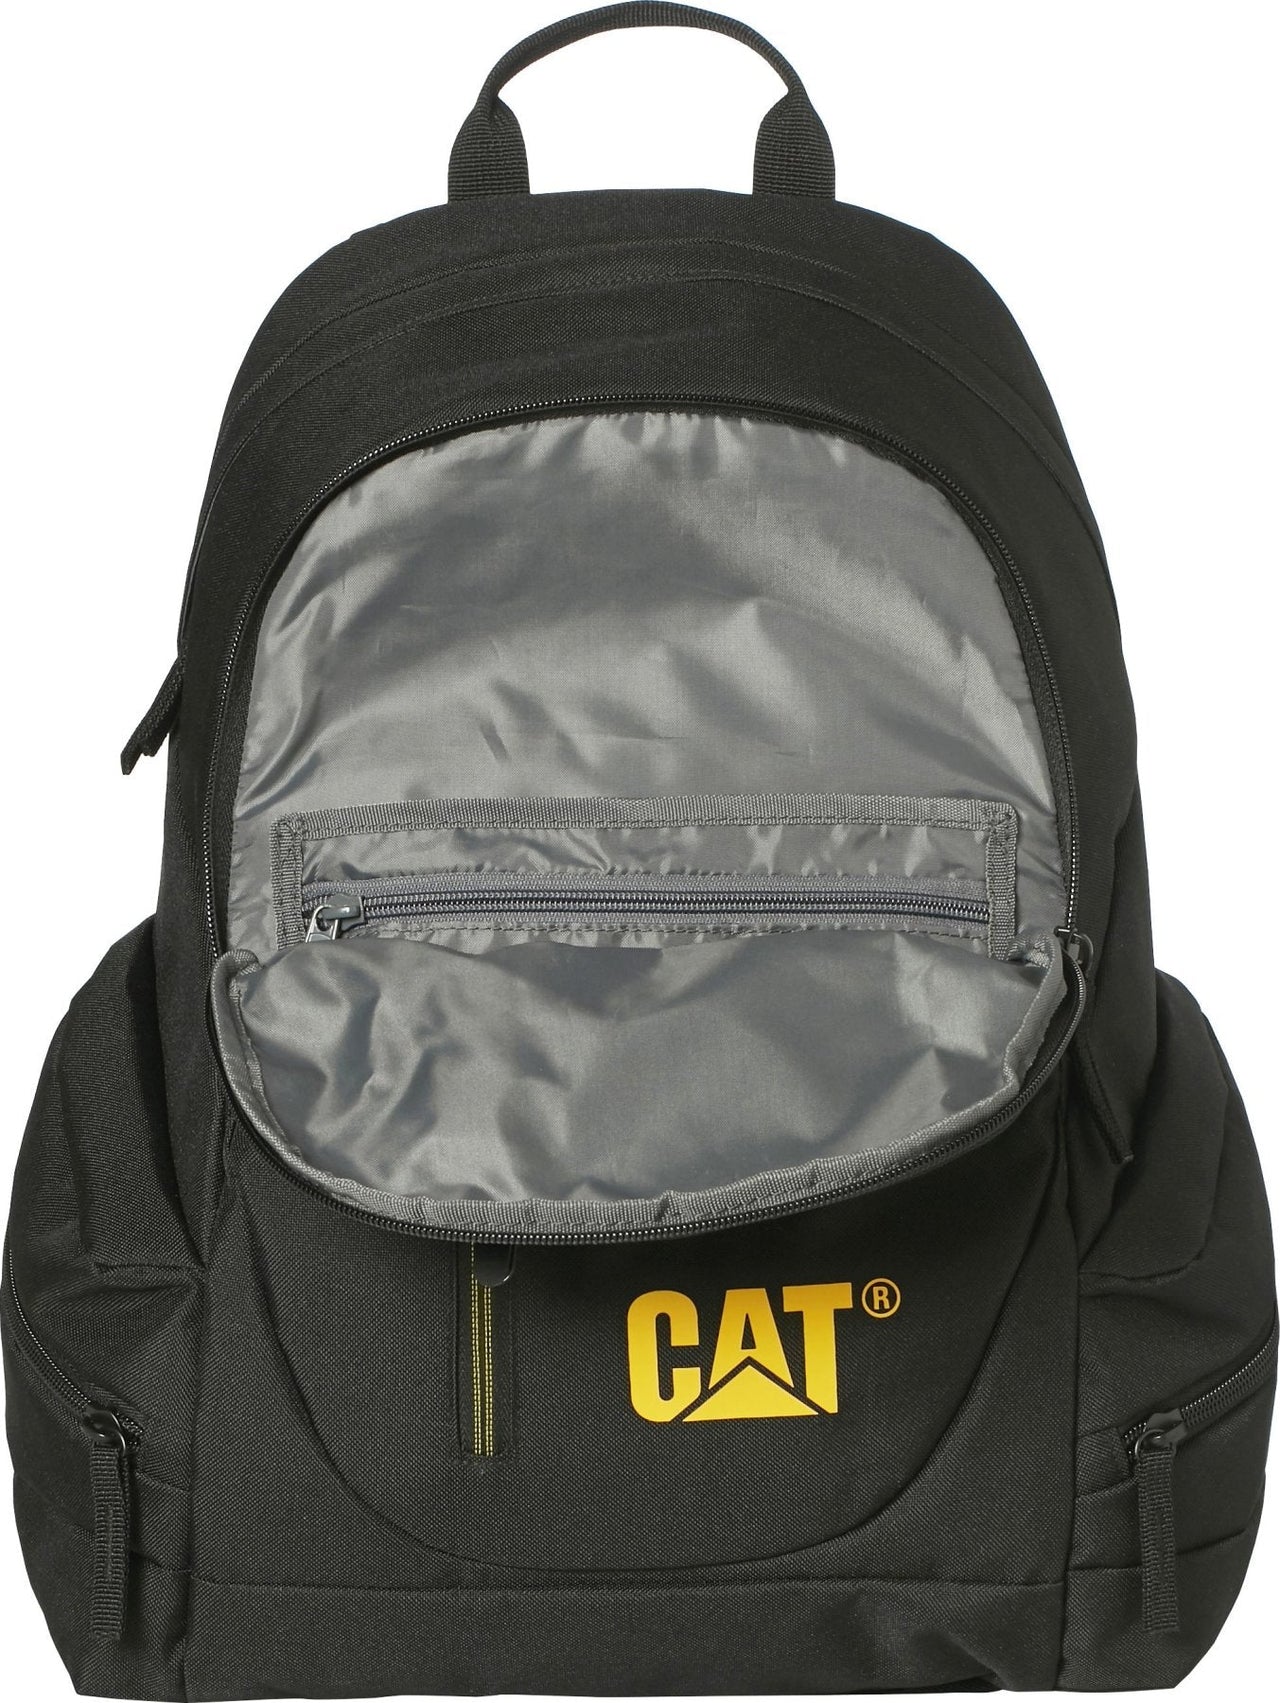 Mochila Cat Backpack Black Para Hombre 83541-01 Mochilas